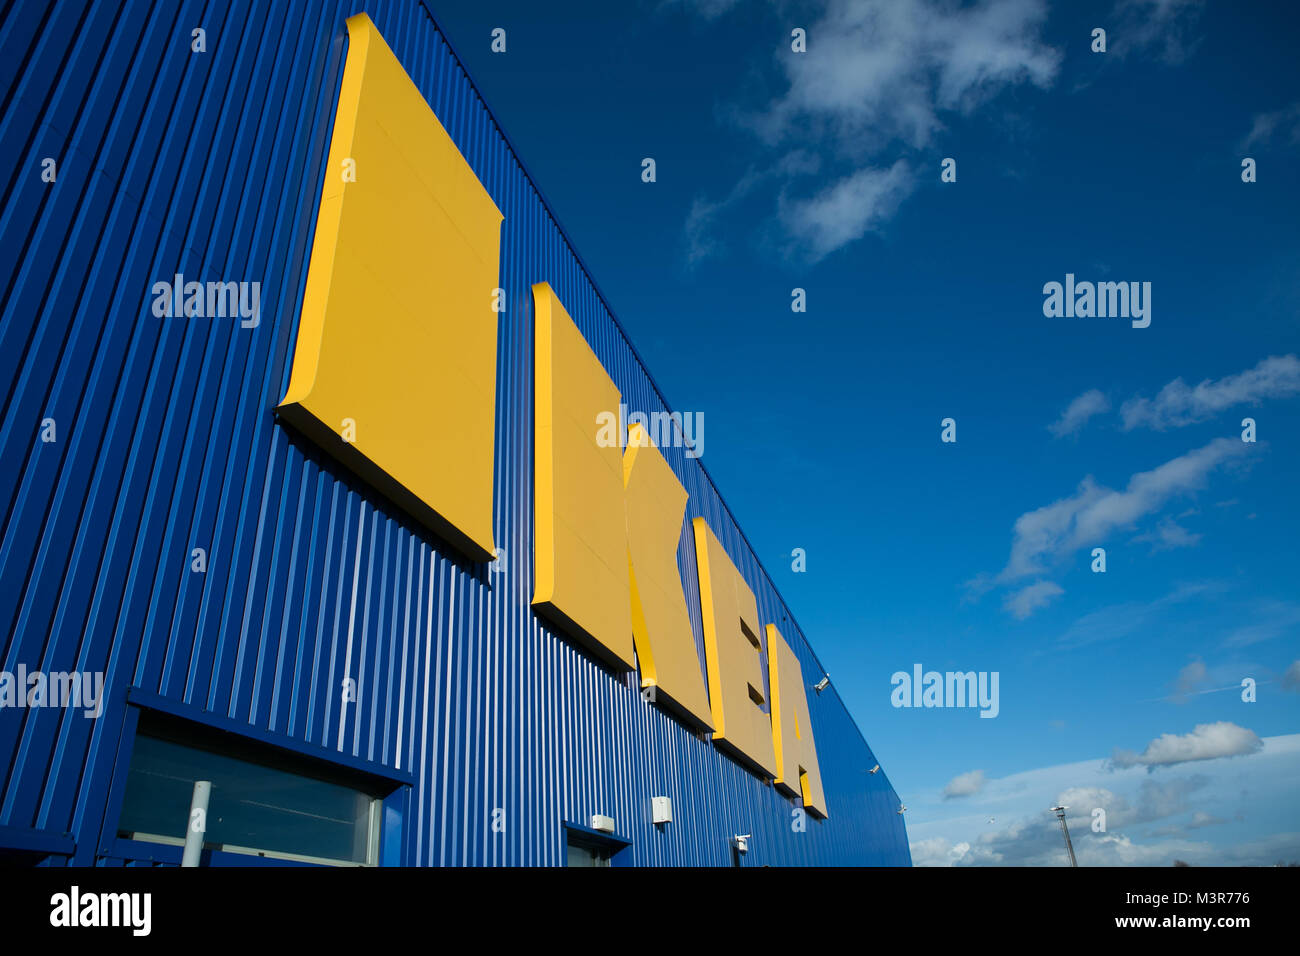 Ikea department store immagini e fotografie stock ad alta risoluzione -  Alamy